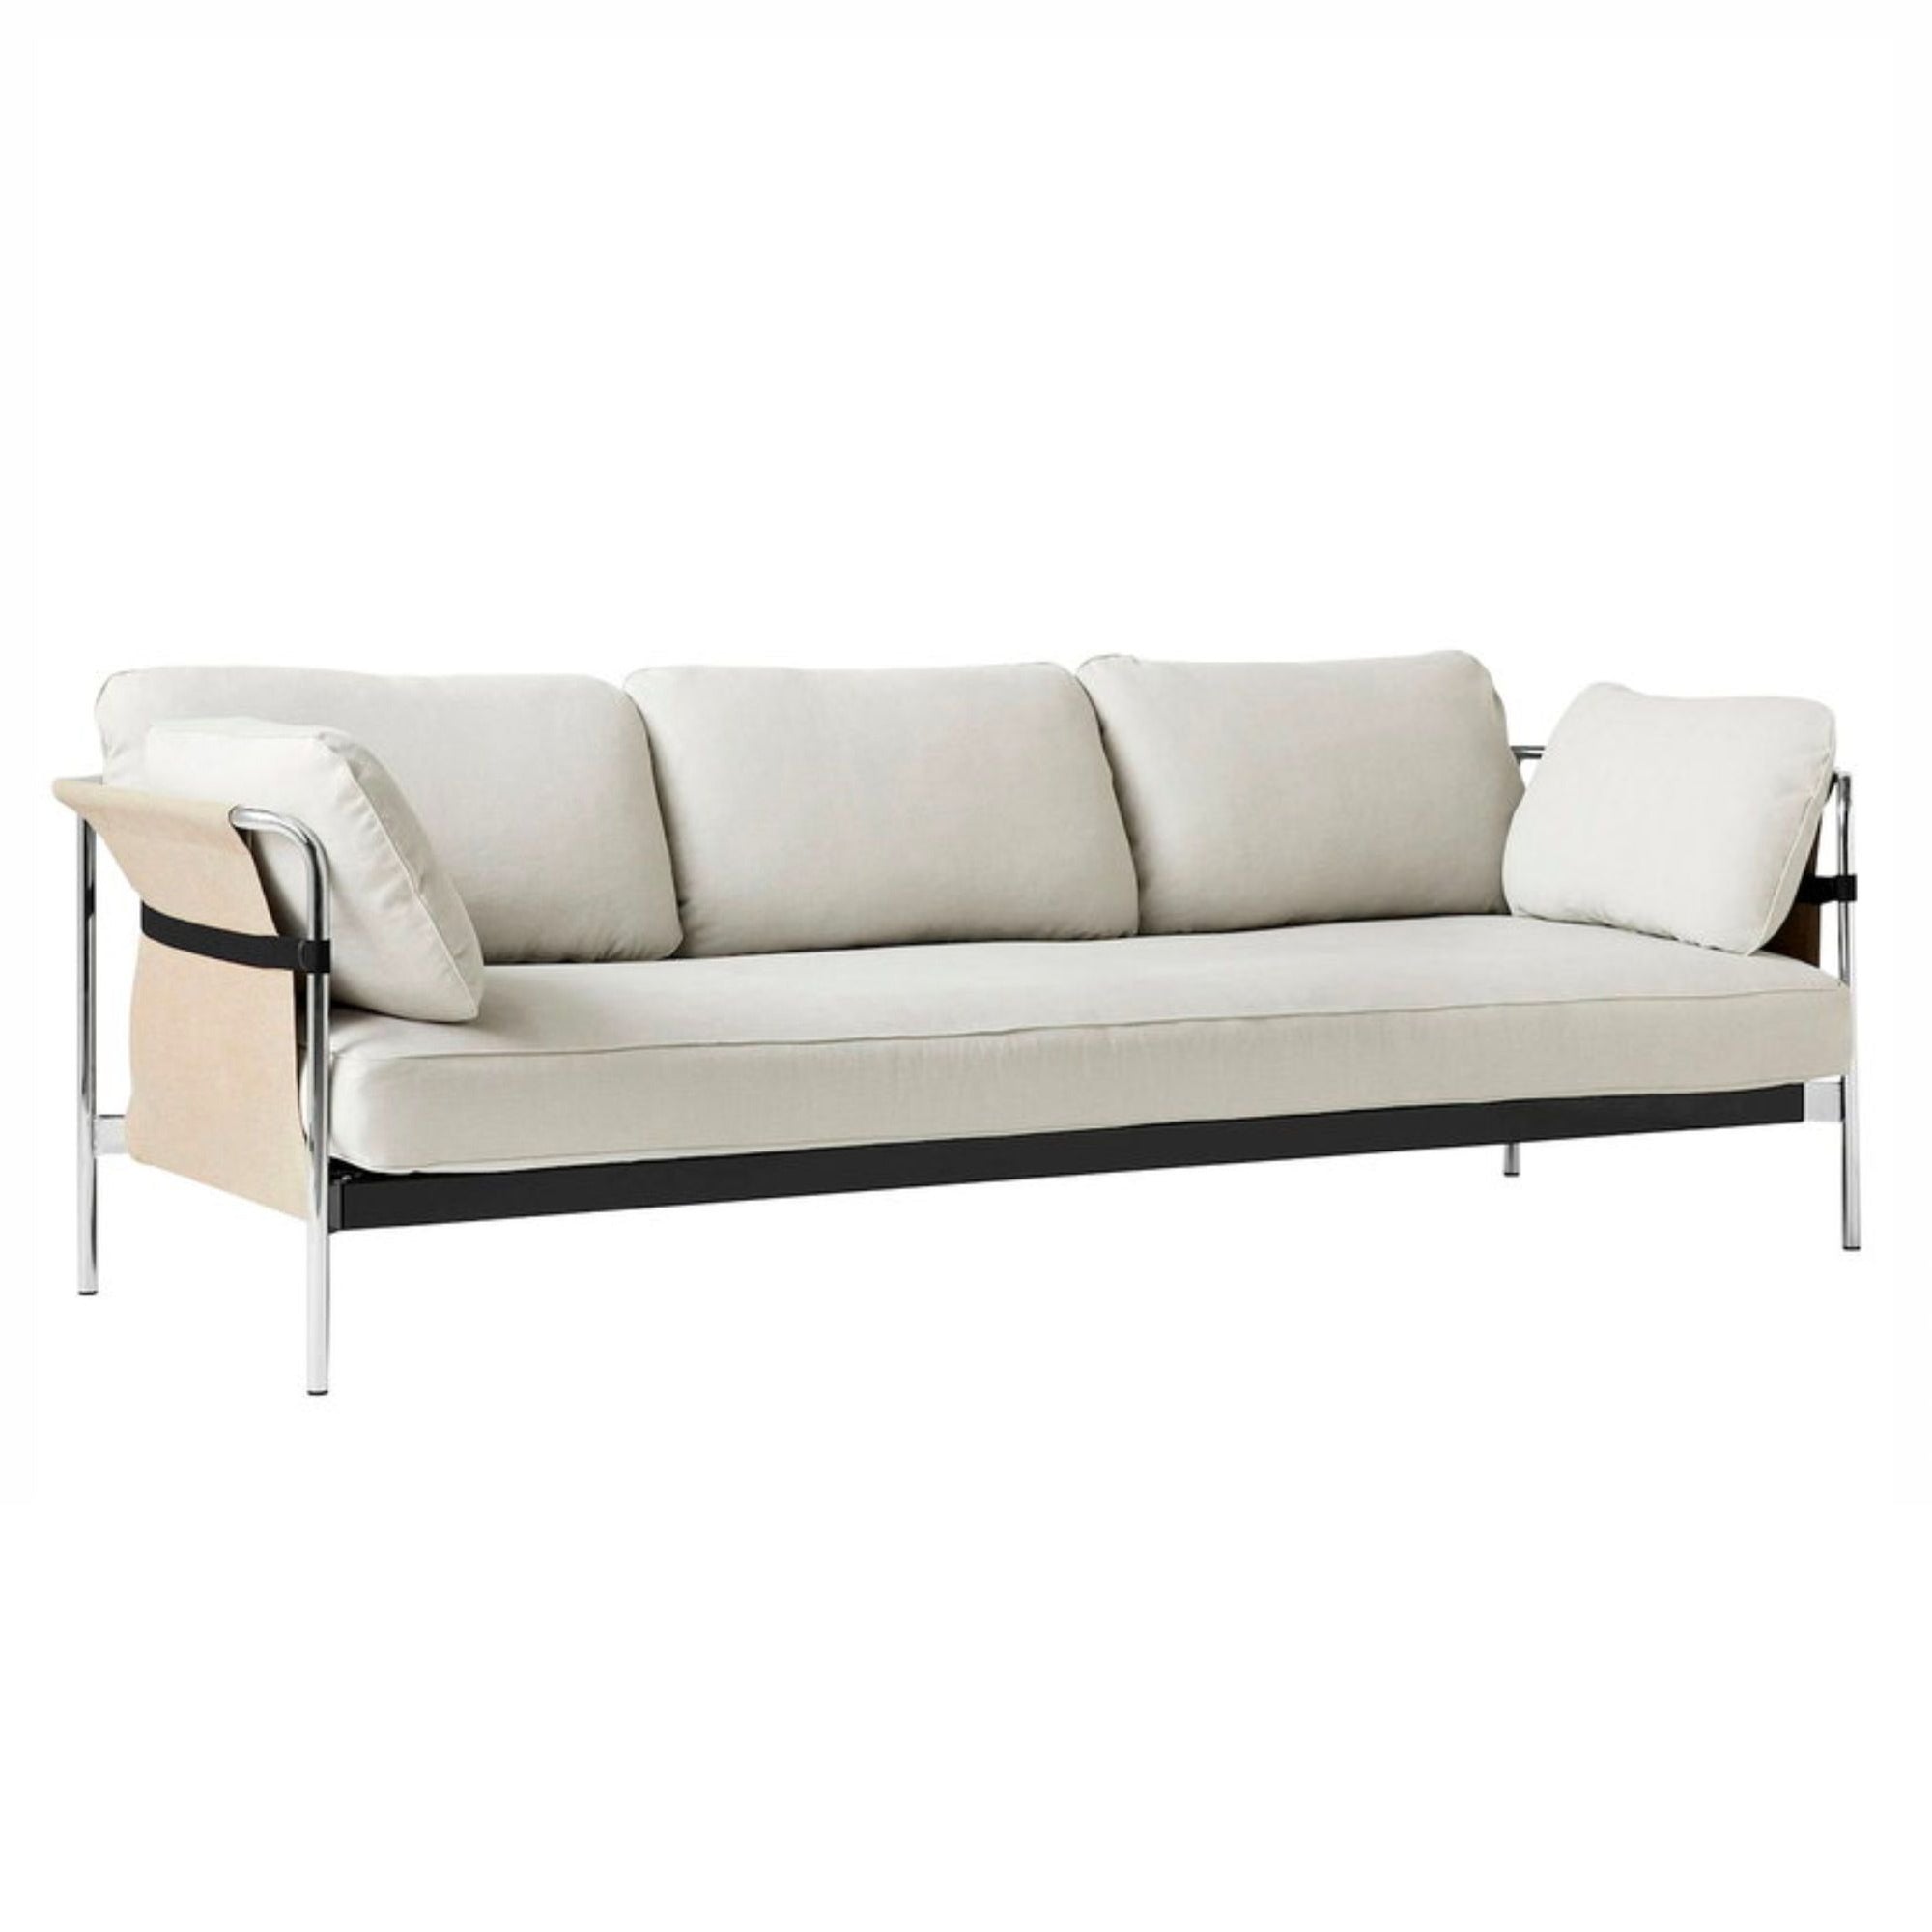 HAY Can 3-Seater Sofa 2.0, chrome - natural - linara331